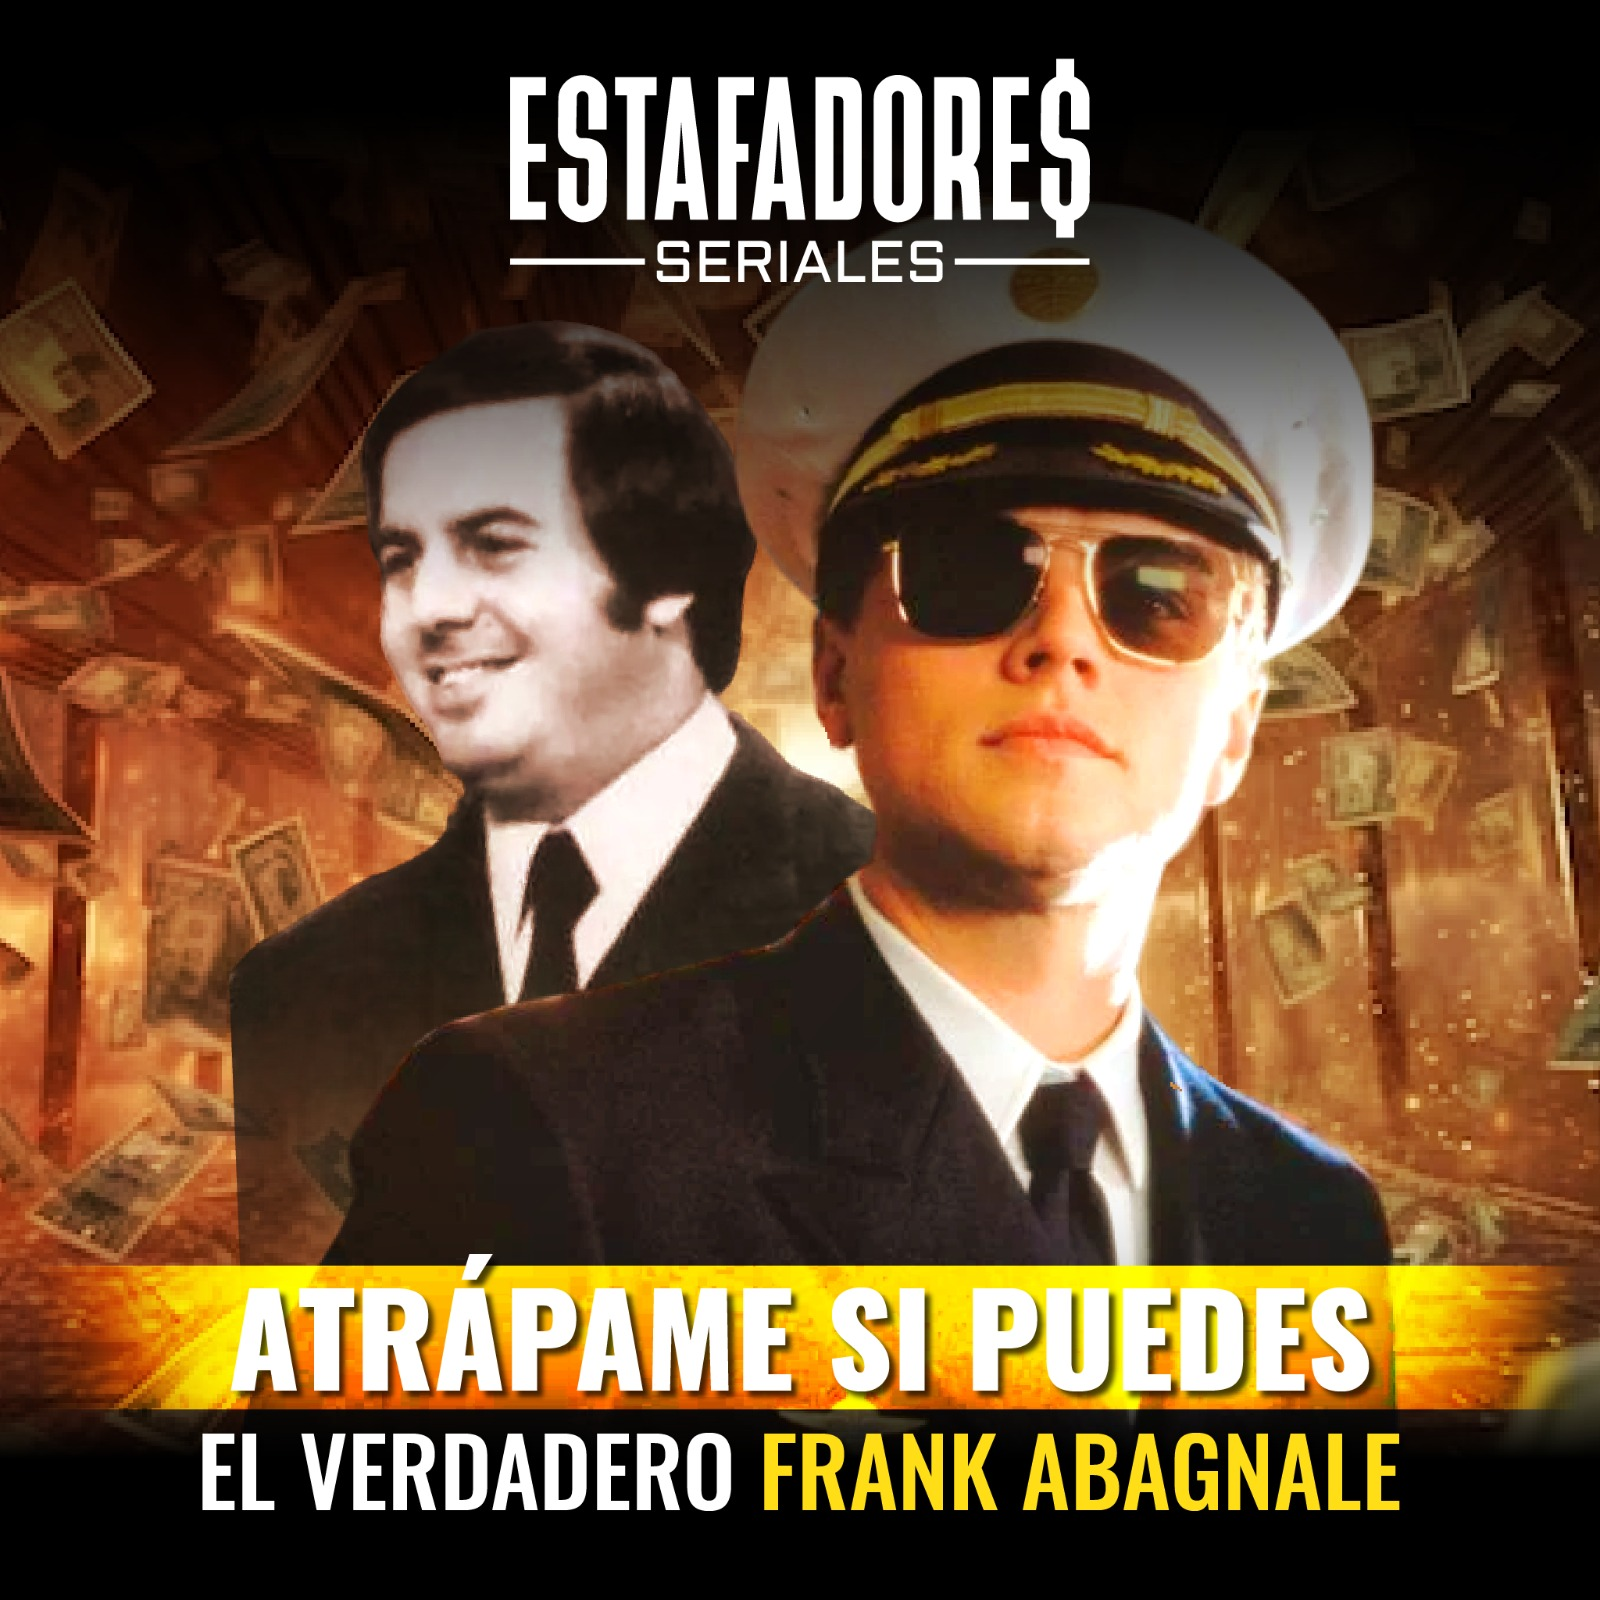 "Atrapame si puedes" El verdadero Frank Abagnale